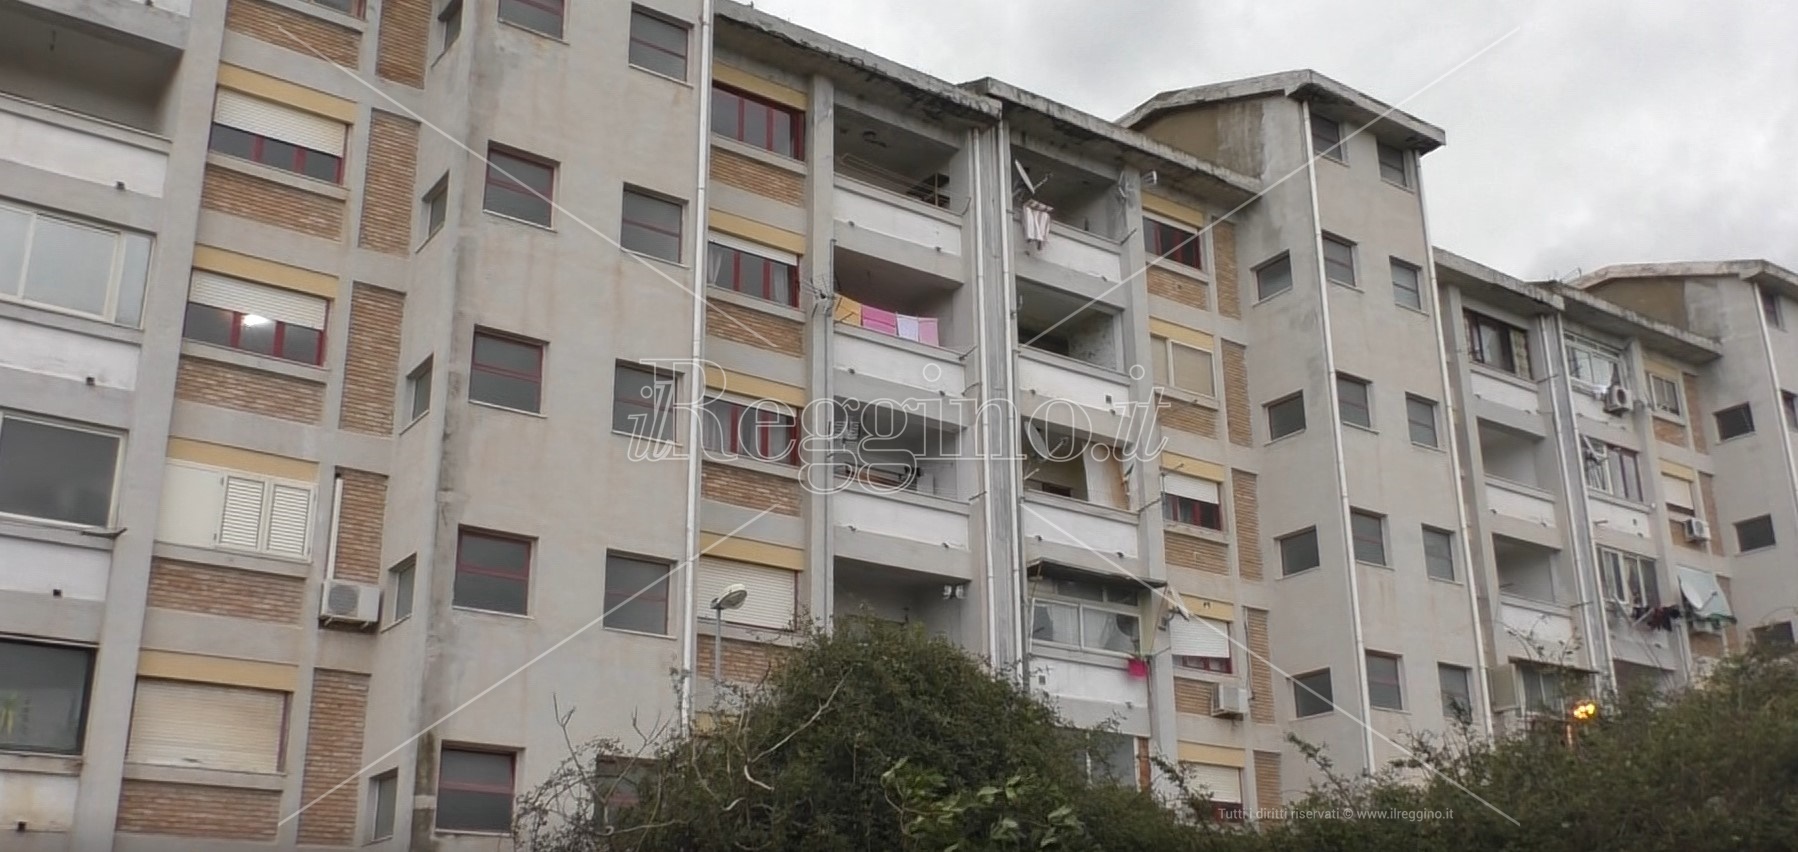 Reggio, emergenza abitativa continua: solo 5 gli alloggi da assegnare “in riserva”